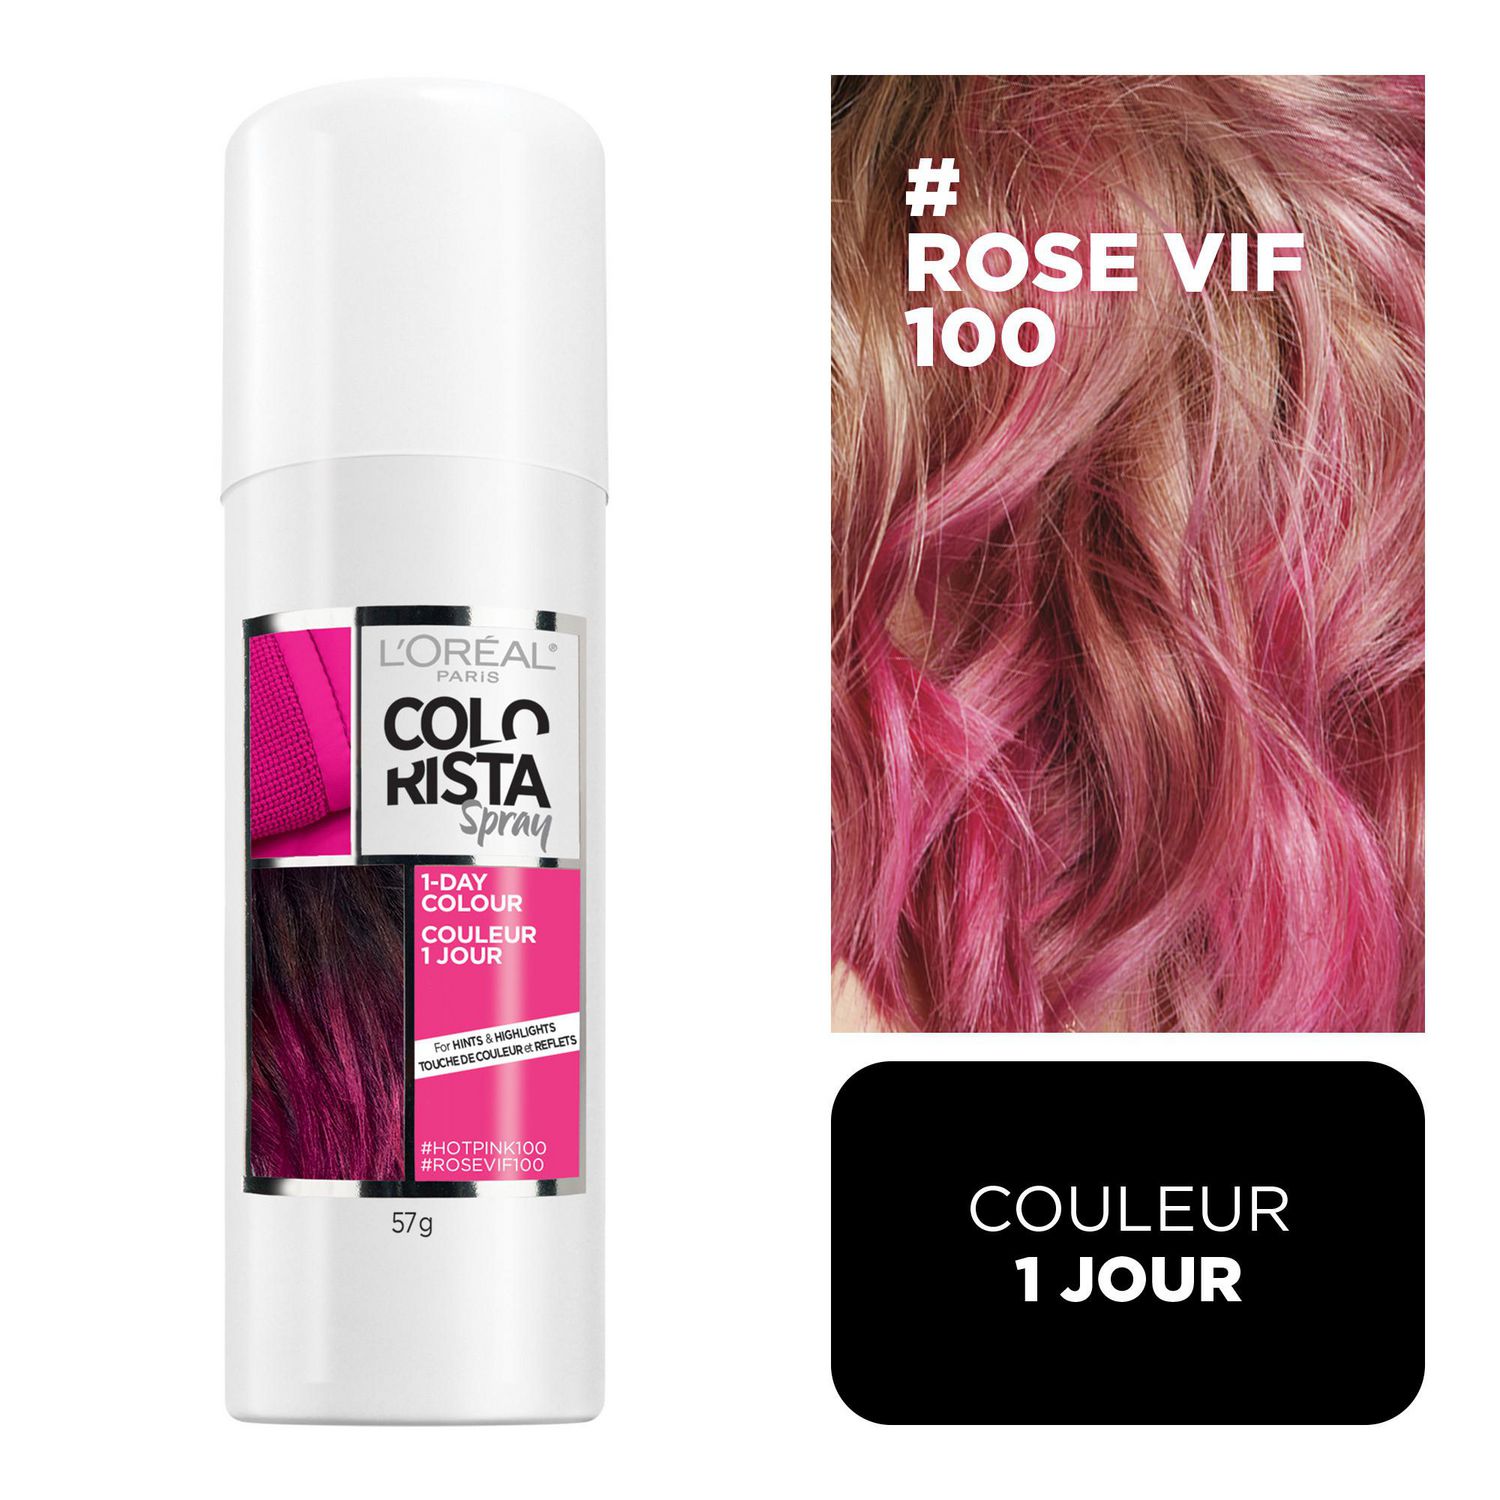 Cheveux colorés instantanément ? ♥ Test du spray colorista de L'Oréal 